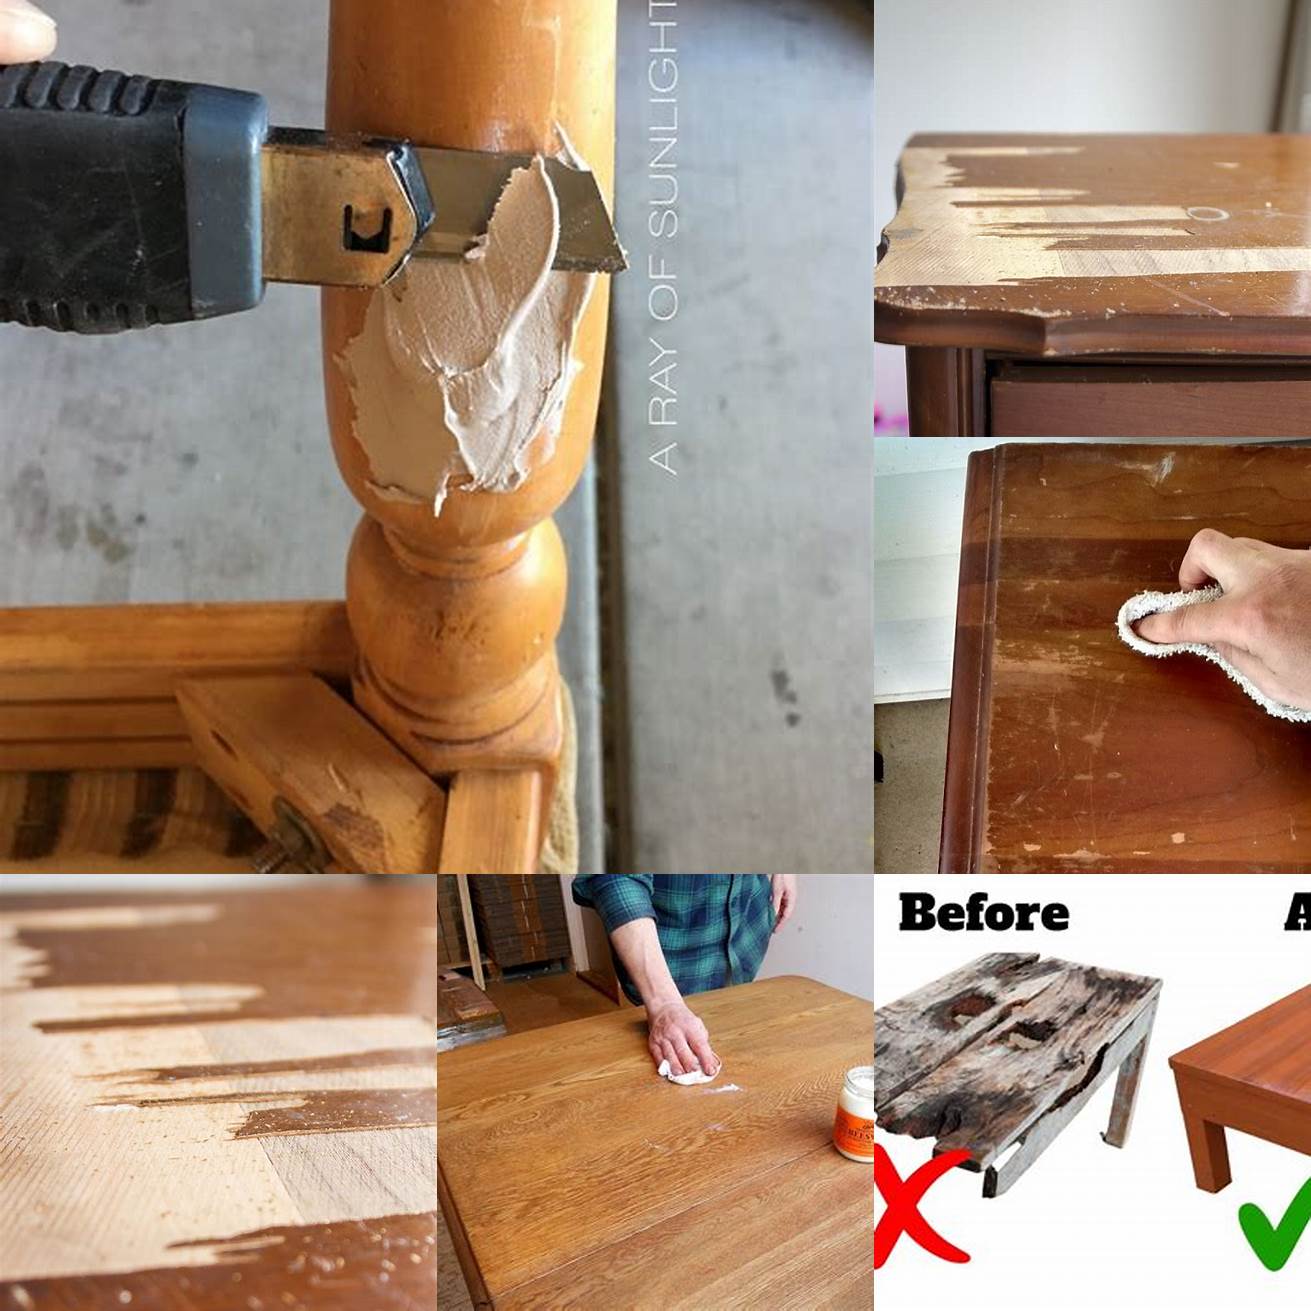 Replacing damaged wood